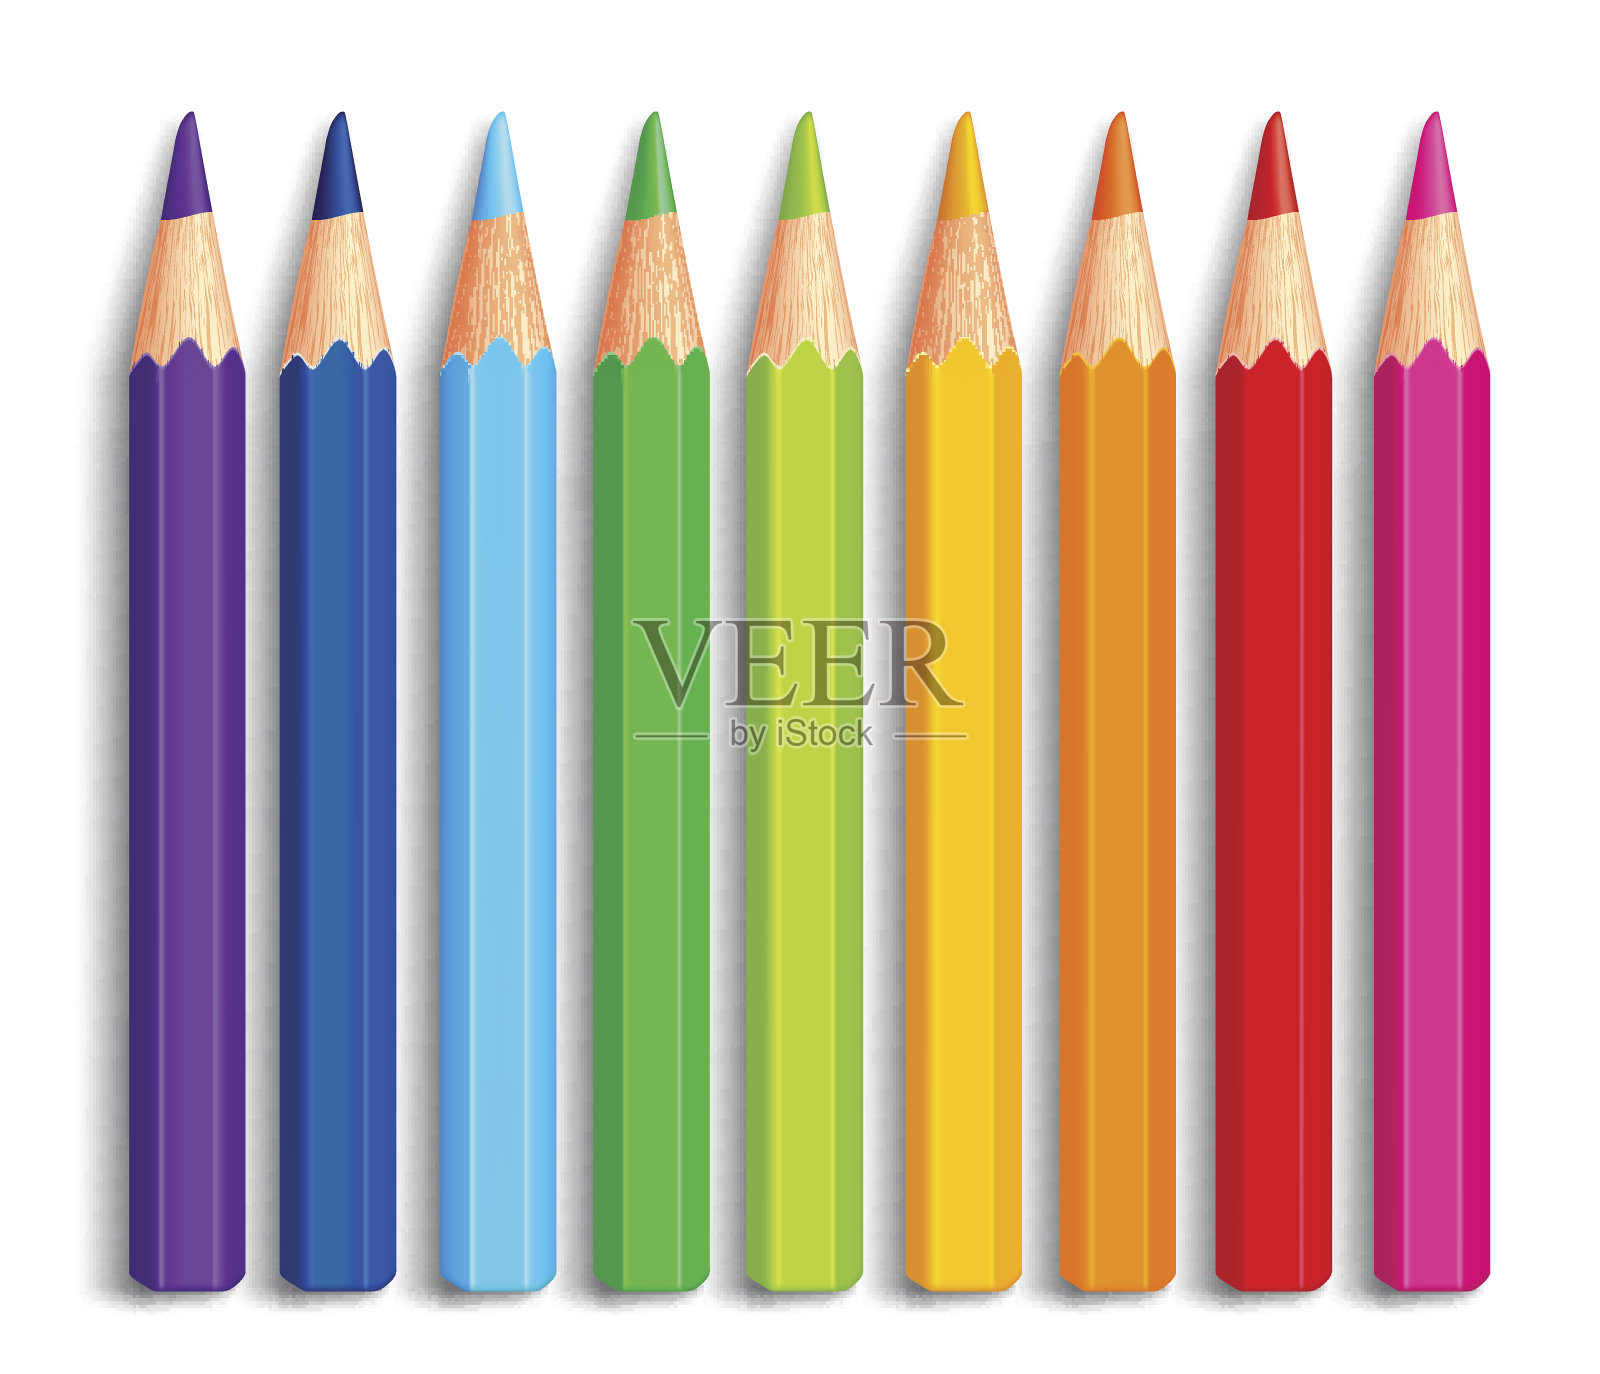 一套逼真的3D多色彩色铅笔或蜡笔插画图片素材